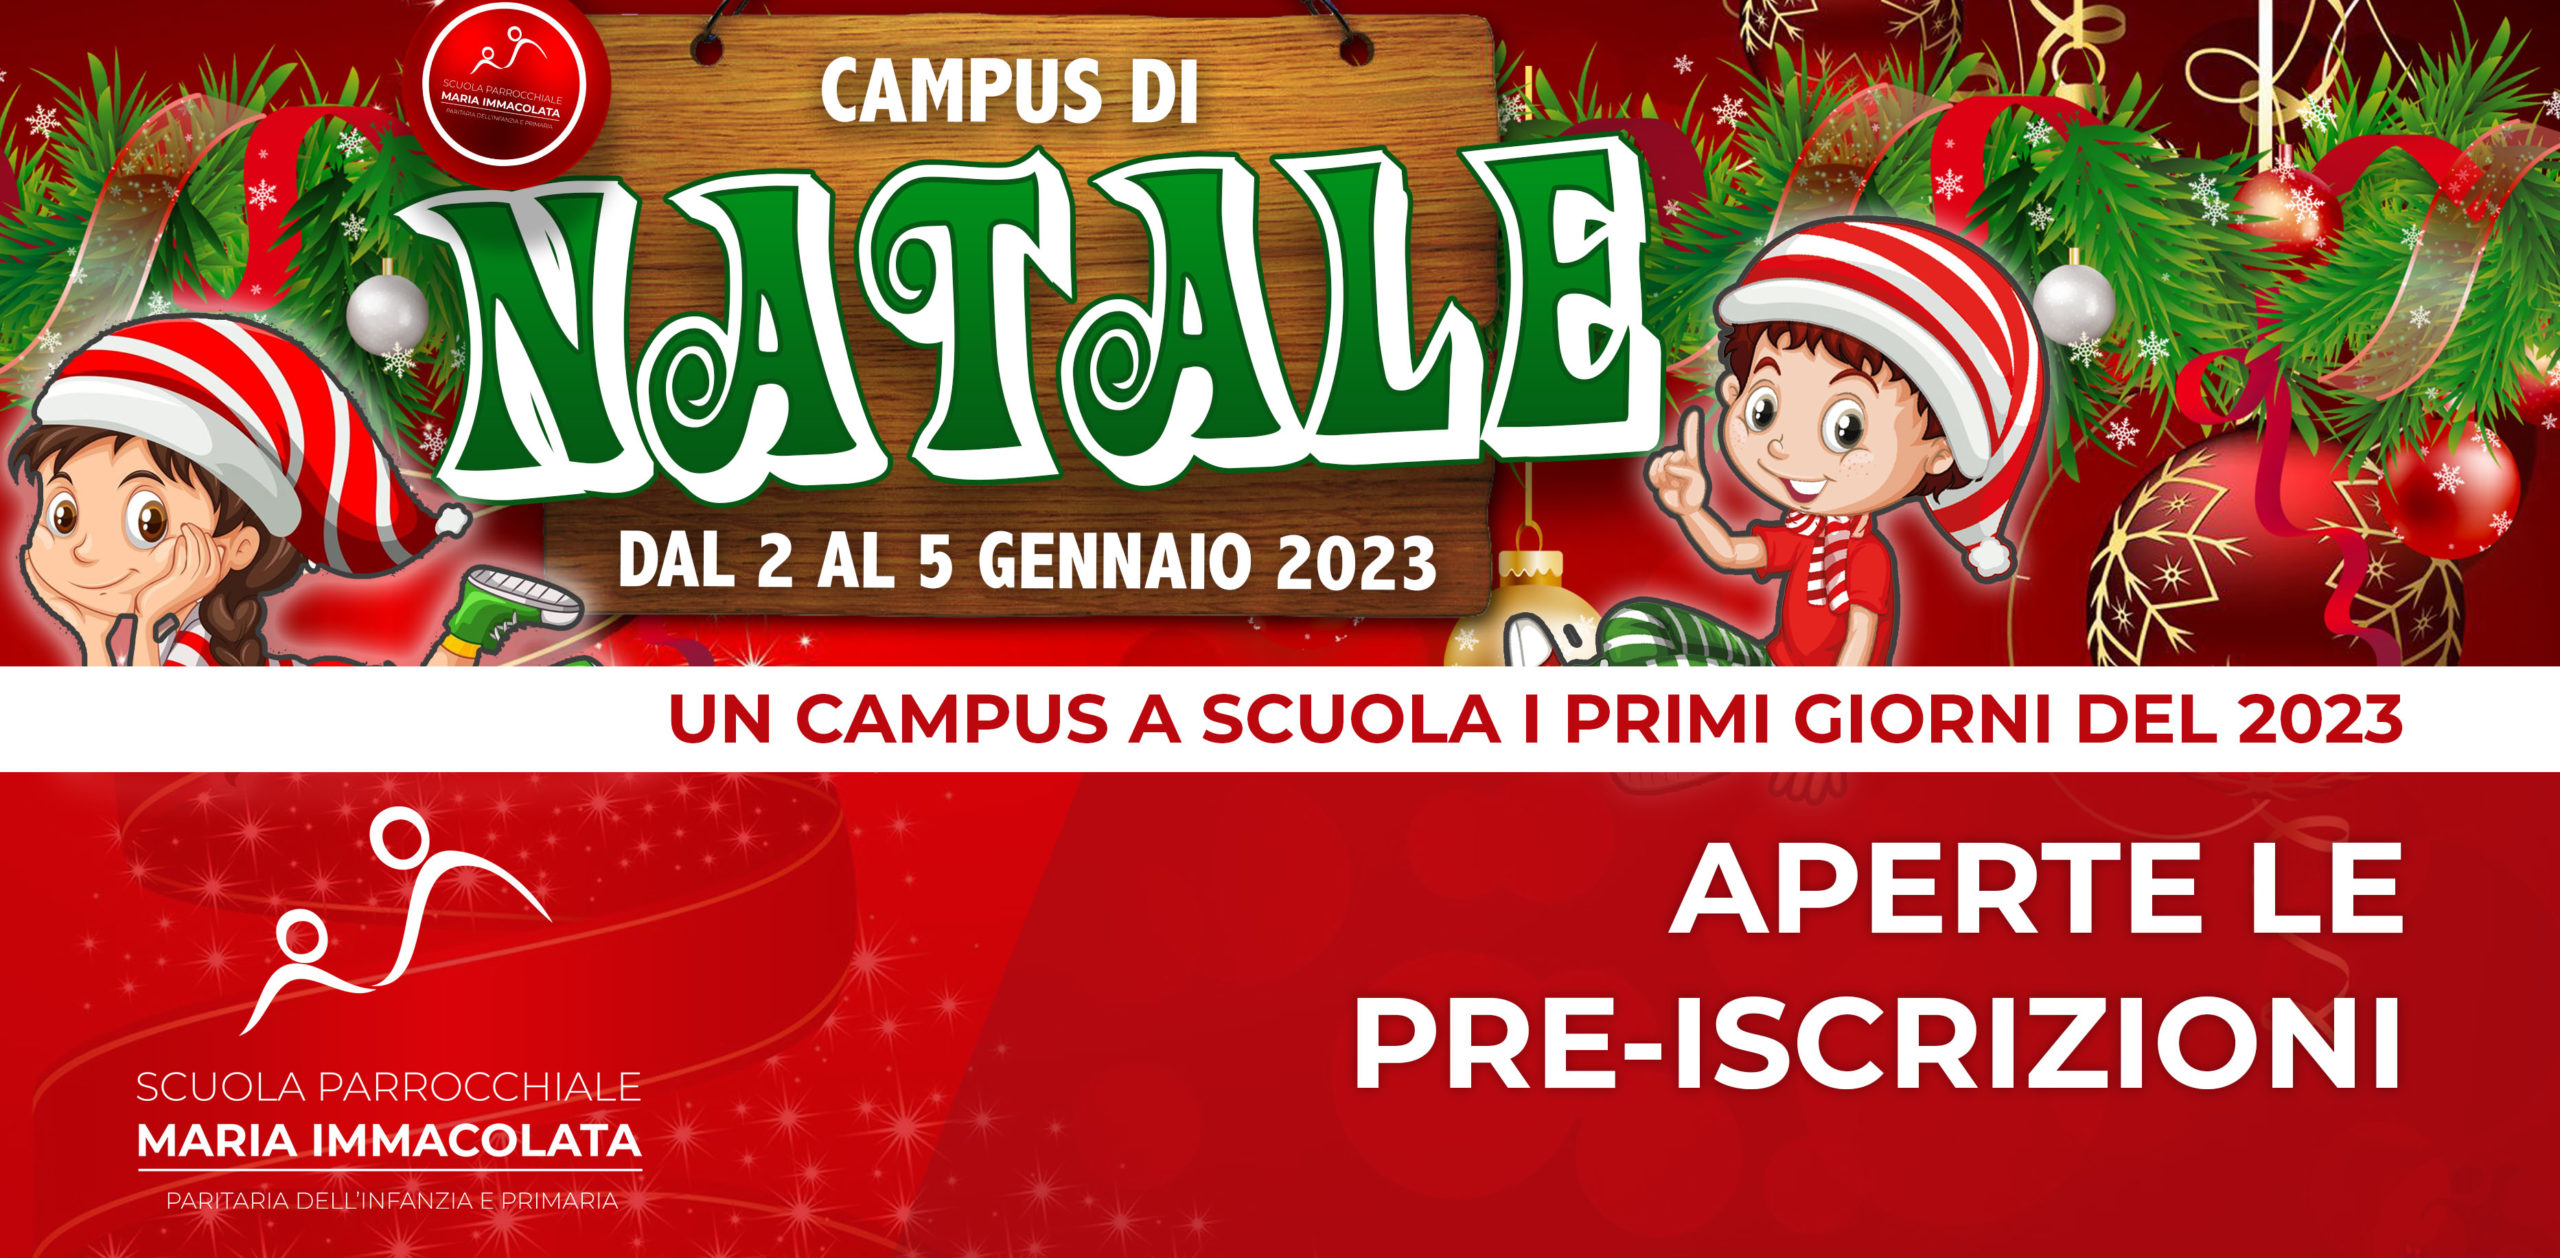 Pre-iscrizione al Campus di Natale dal 2 al 5 gennaio 2023